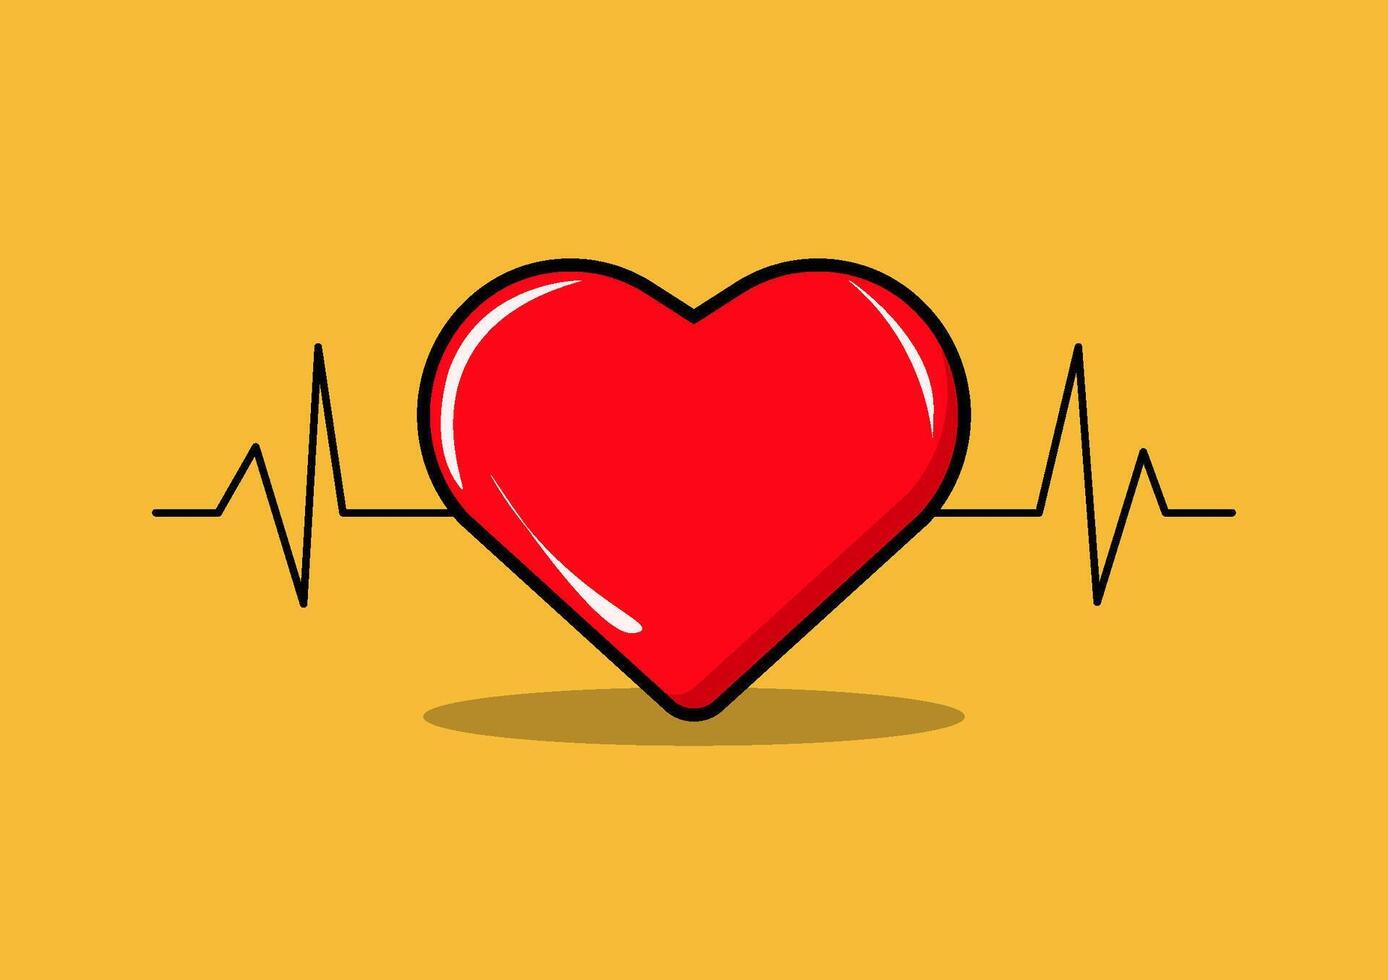 tekenfilm vector illustratie van een rood hart met een hart tarief diagram in de achtergrond. combineert de symbool van liefde met de concept van hart ritme, creëren een speels en dynamisch beeld